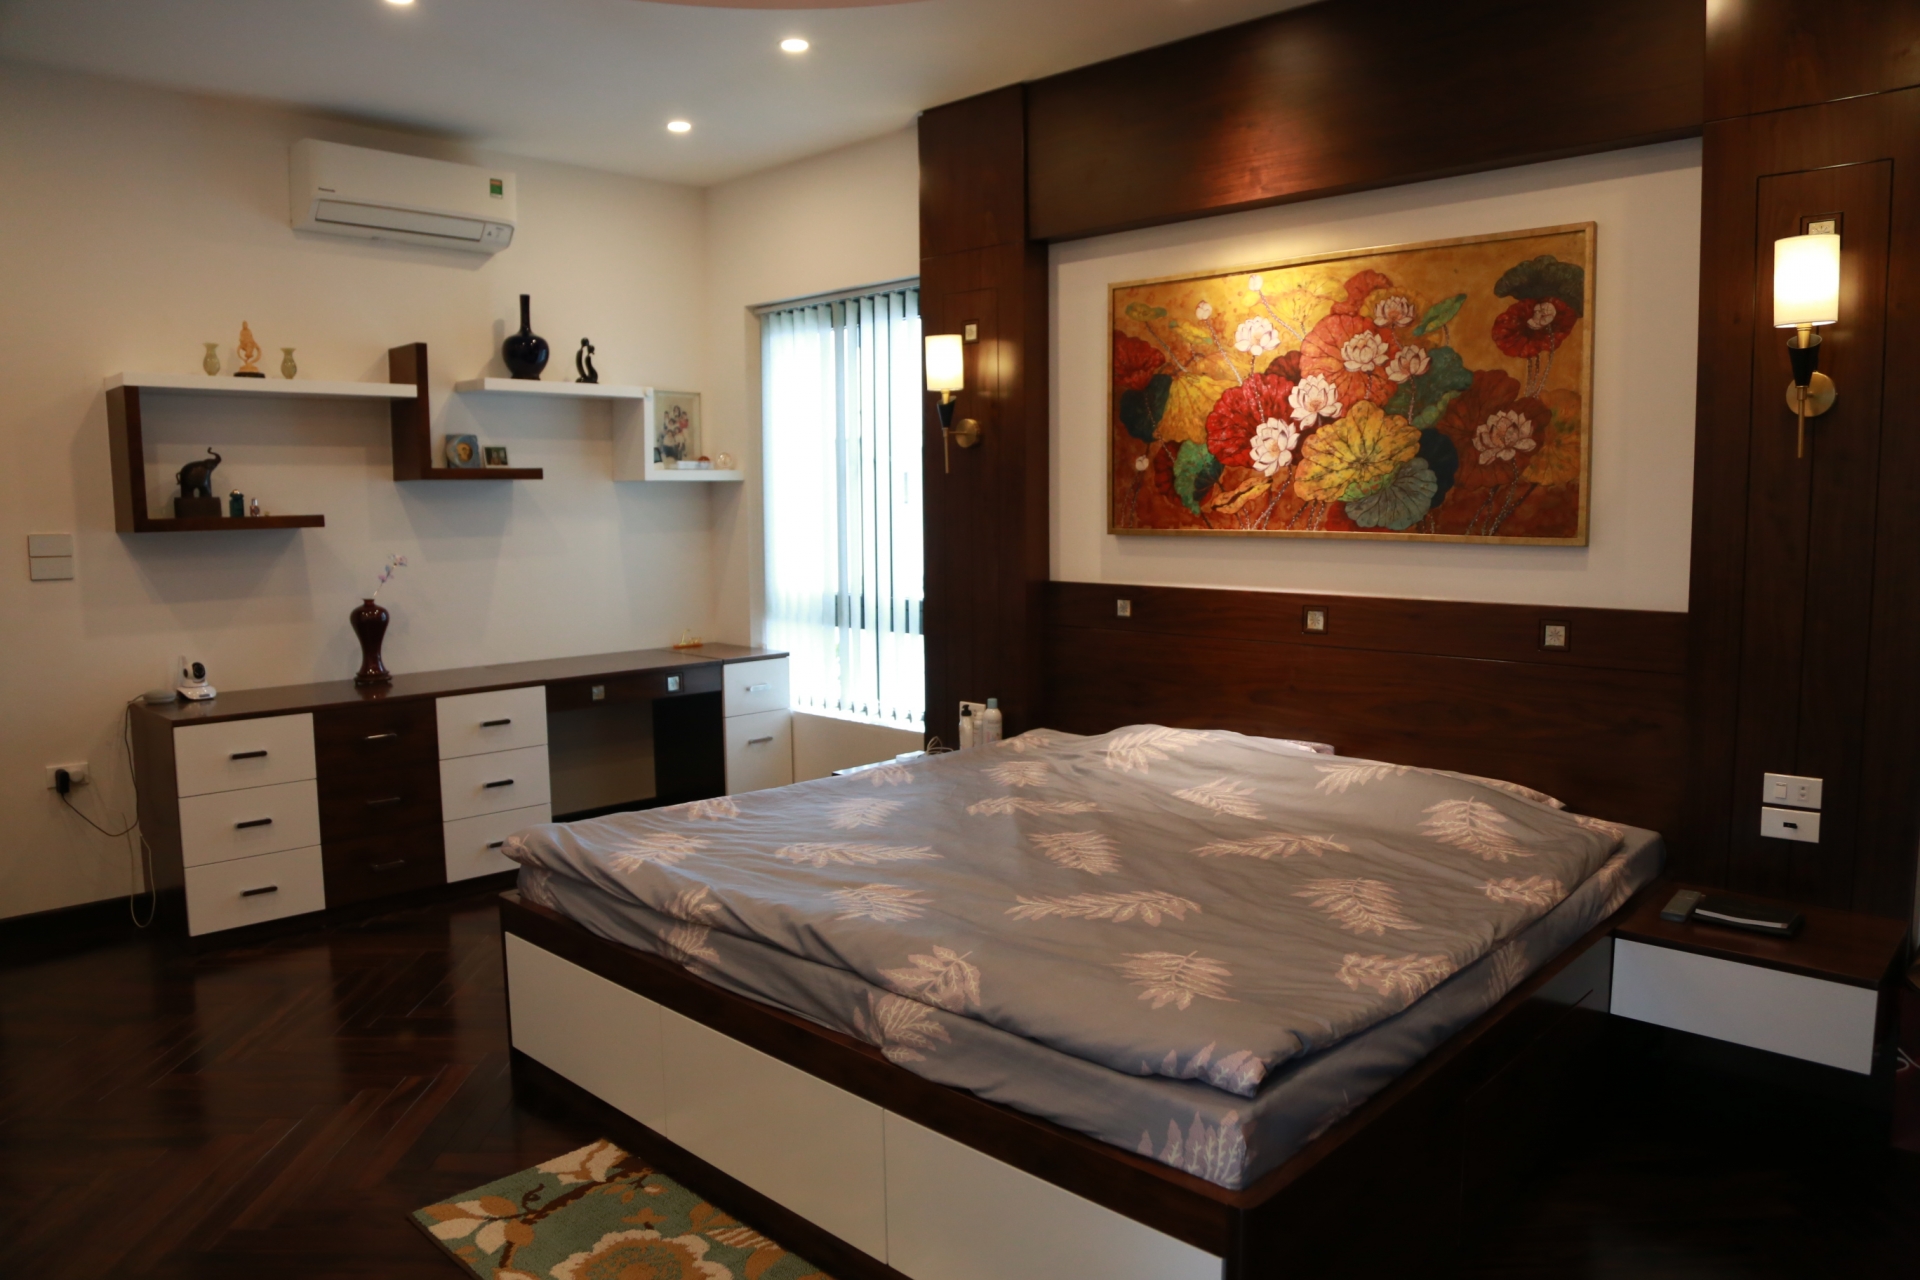 Phòng ngủ 2 vợ chồng theo phong cách tối giản, điểm nhấn là bức tranh sơn mài hoa sen.